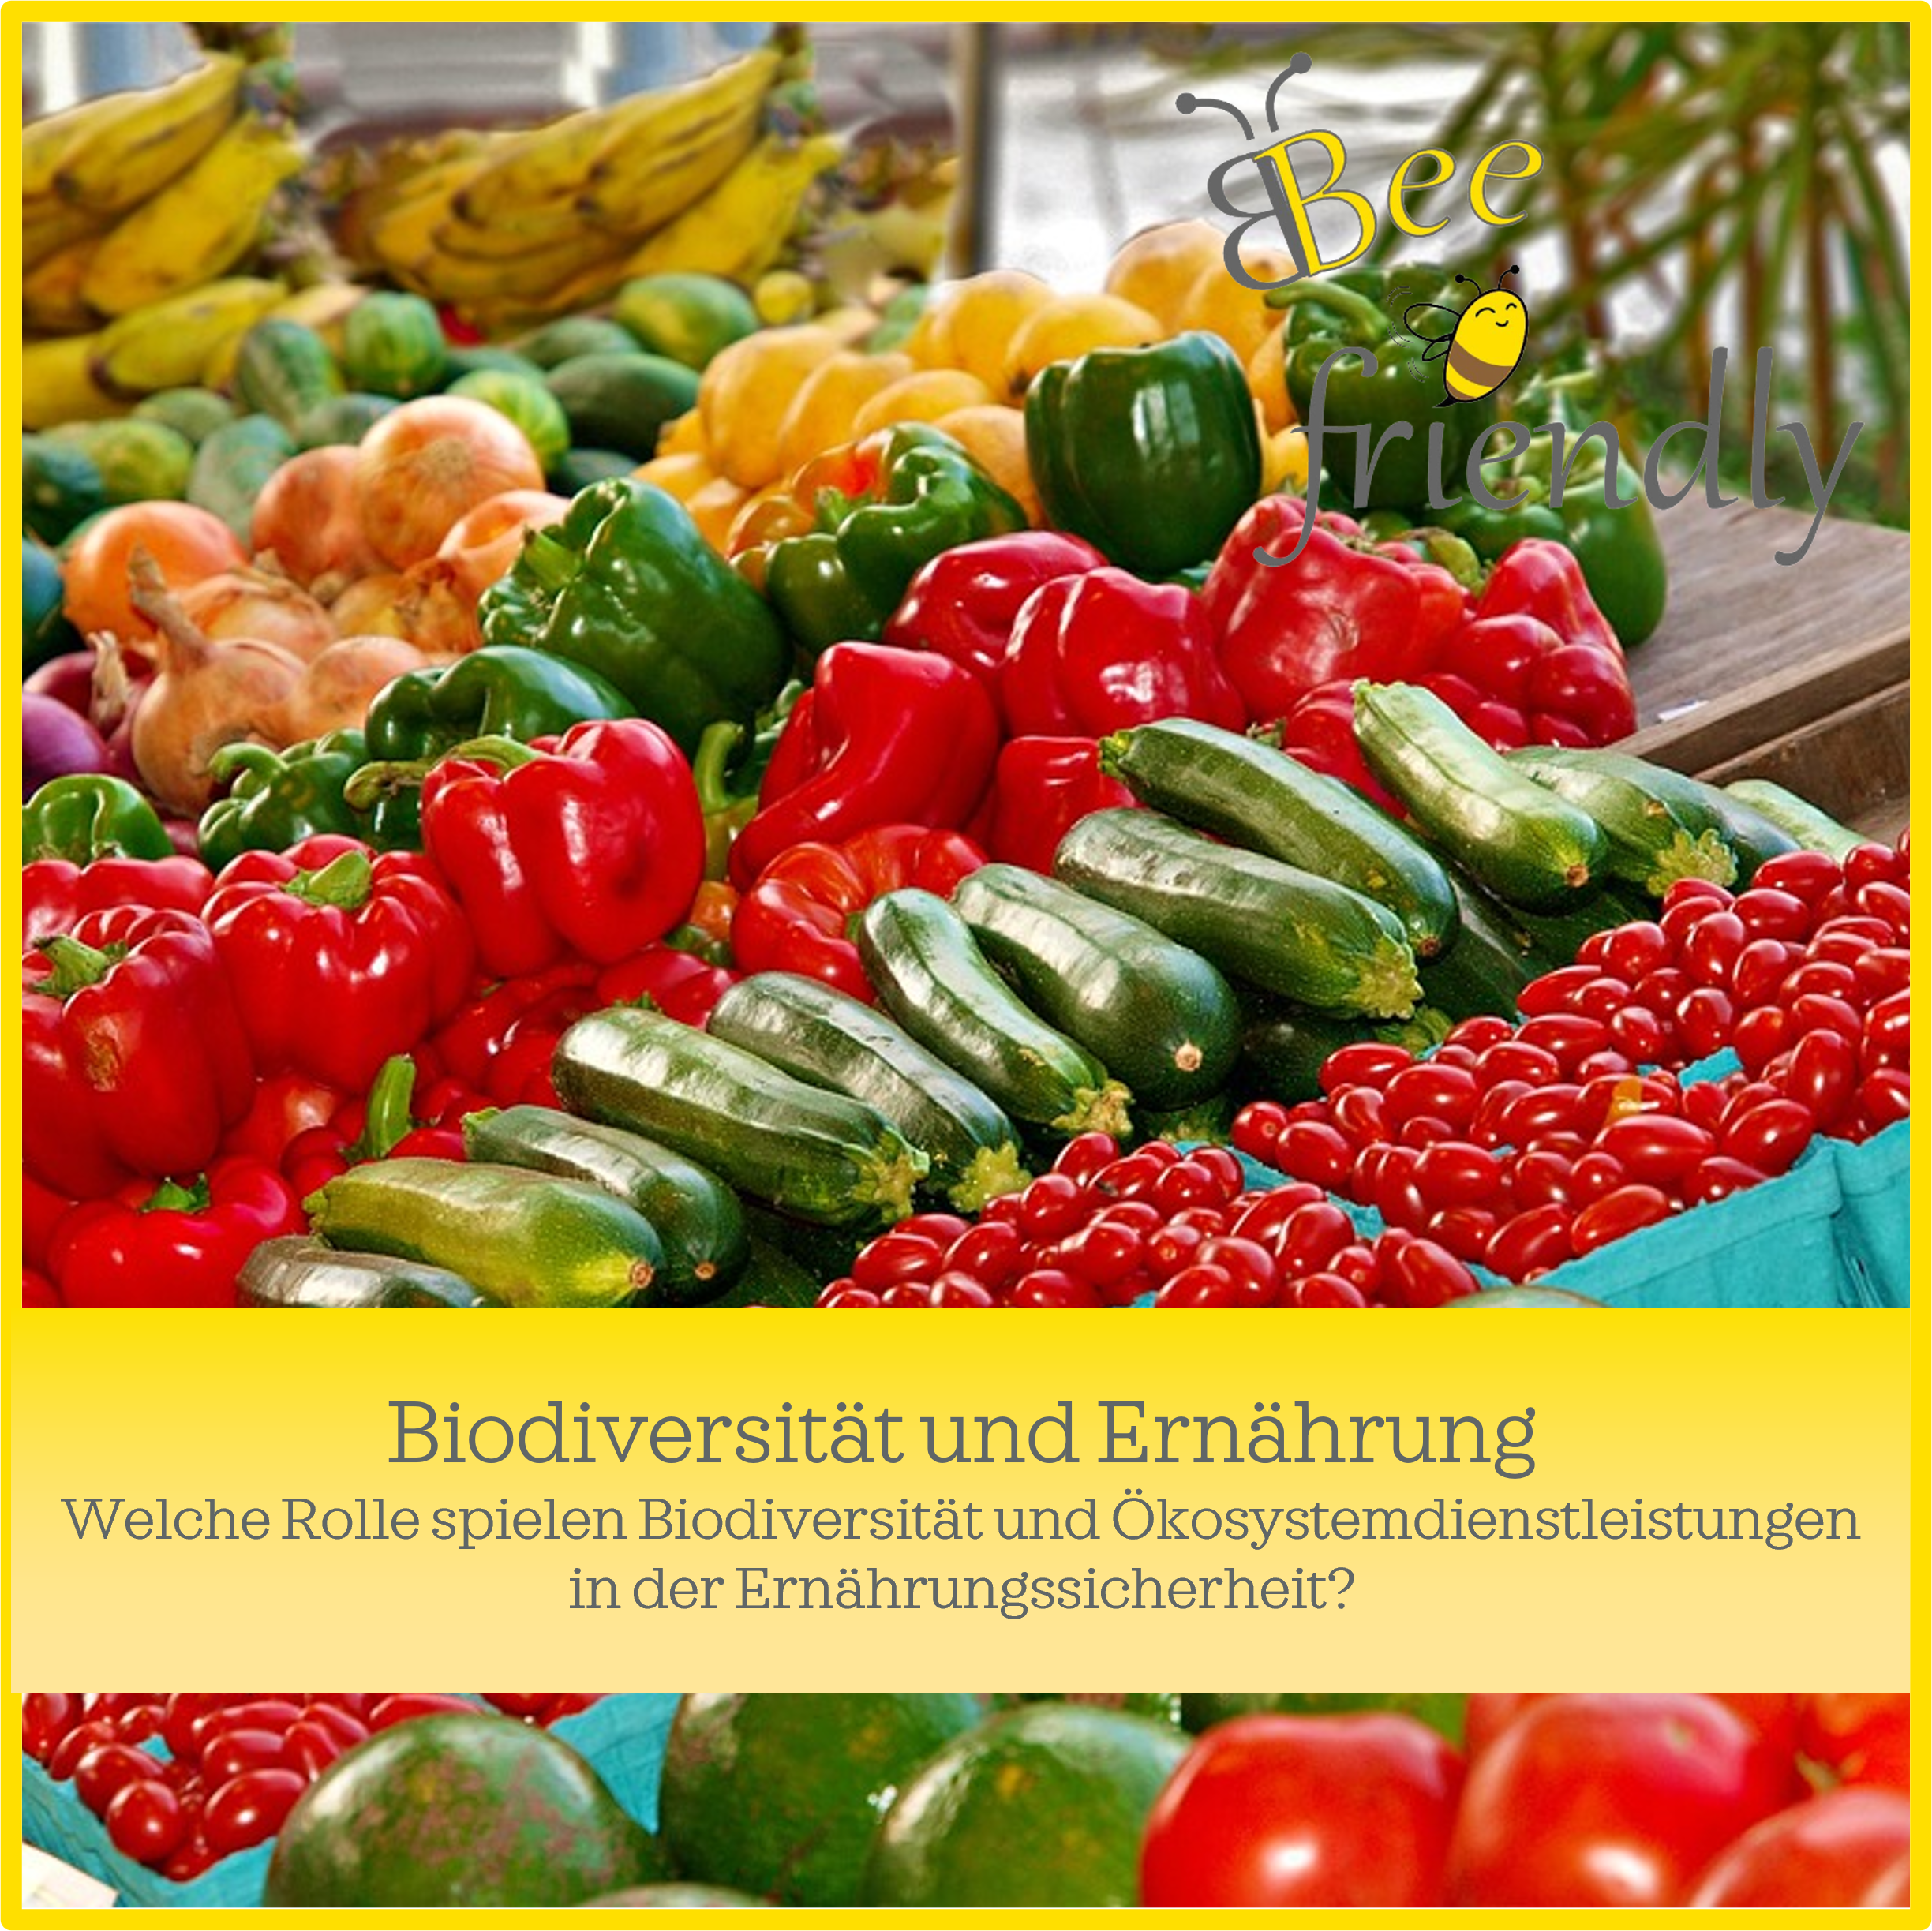 Biodiversität, Ökosystemdienstleistungen und Ernährungssicherheit